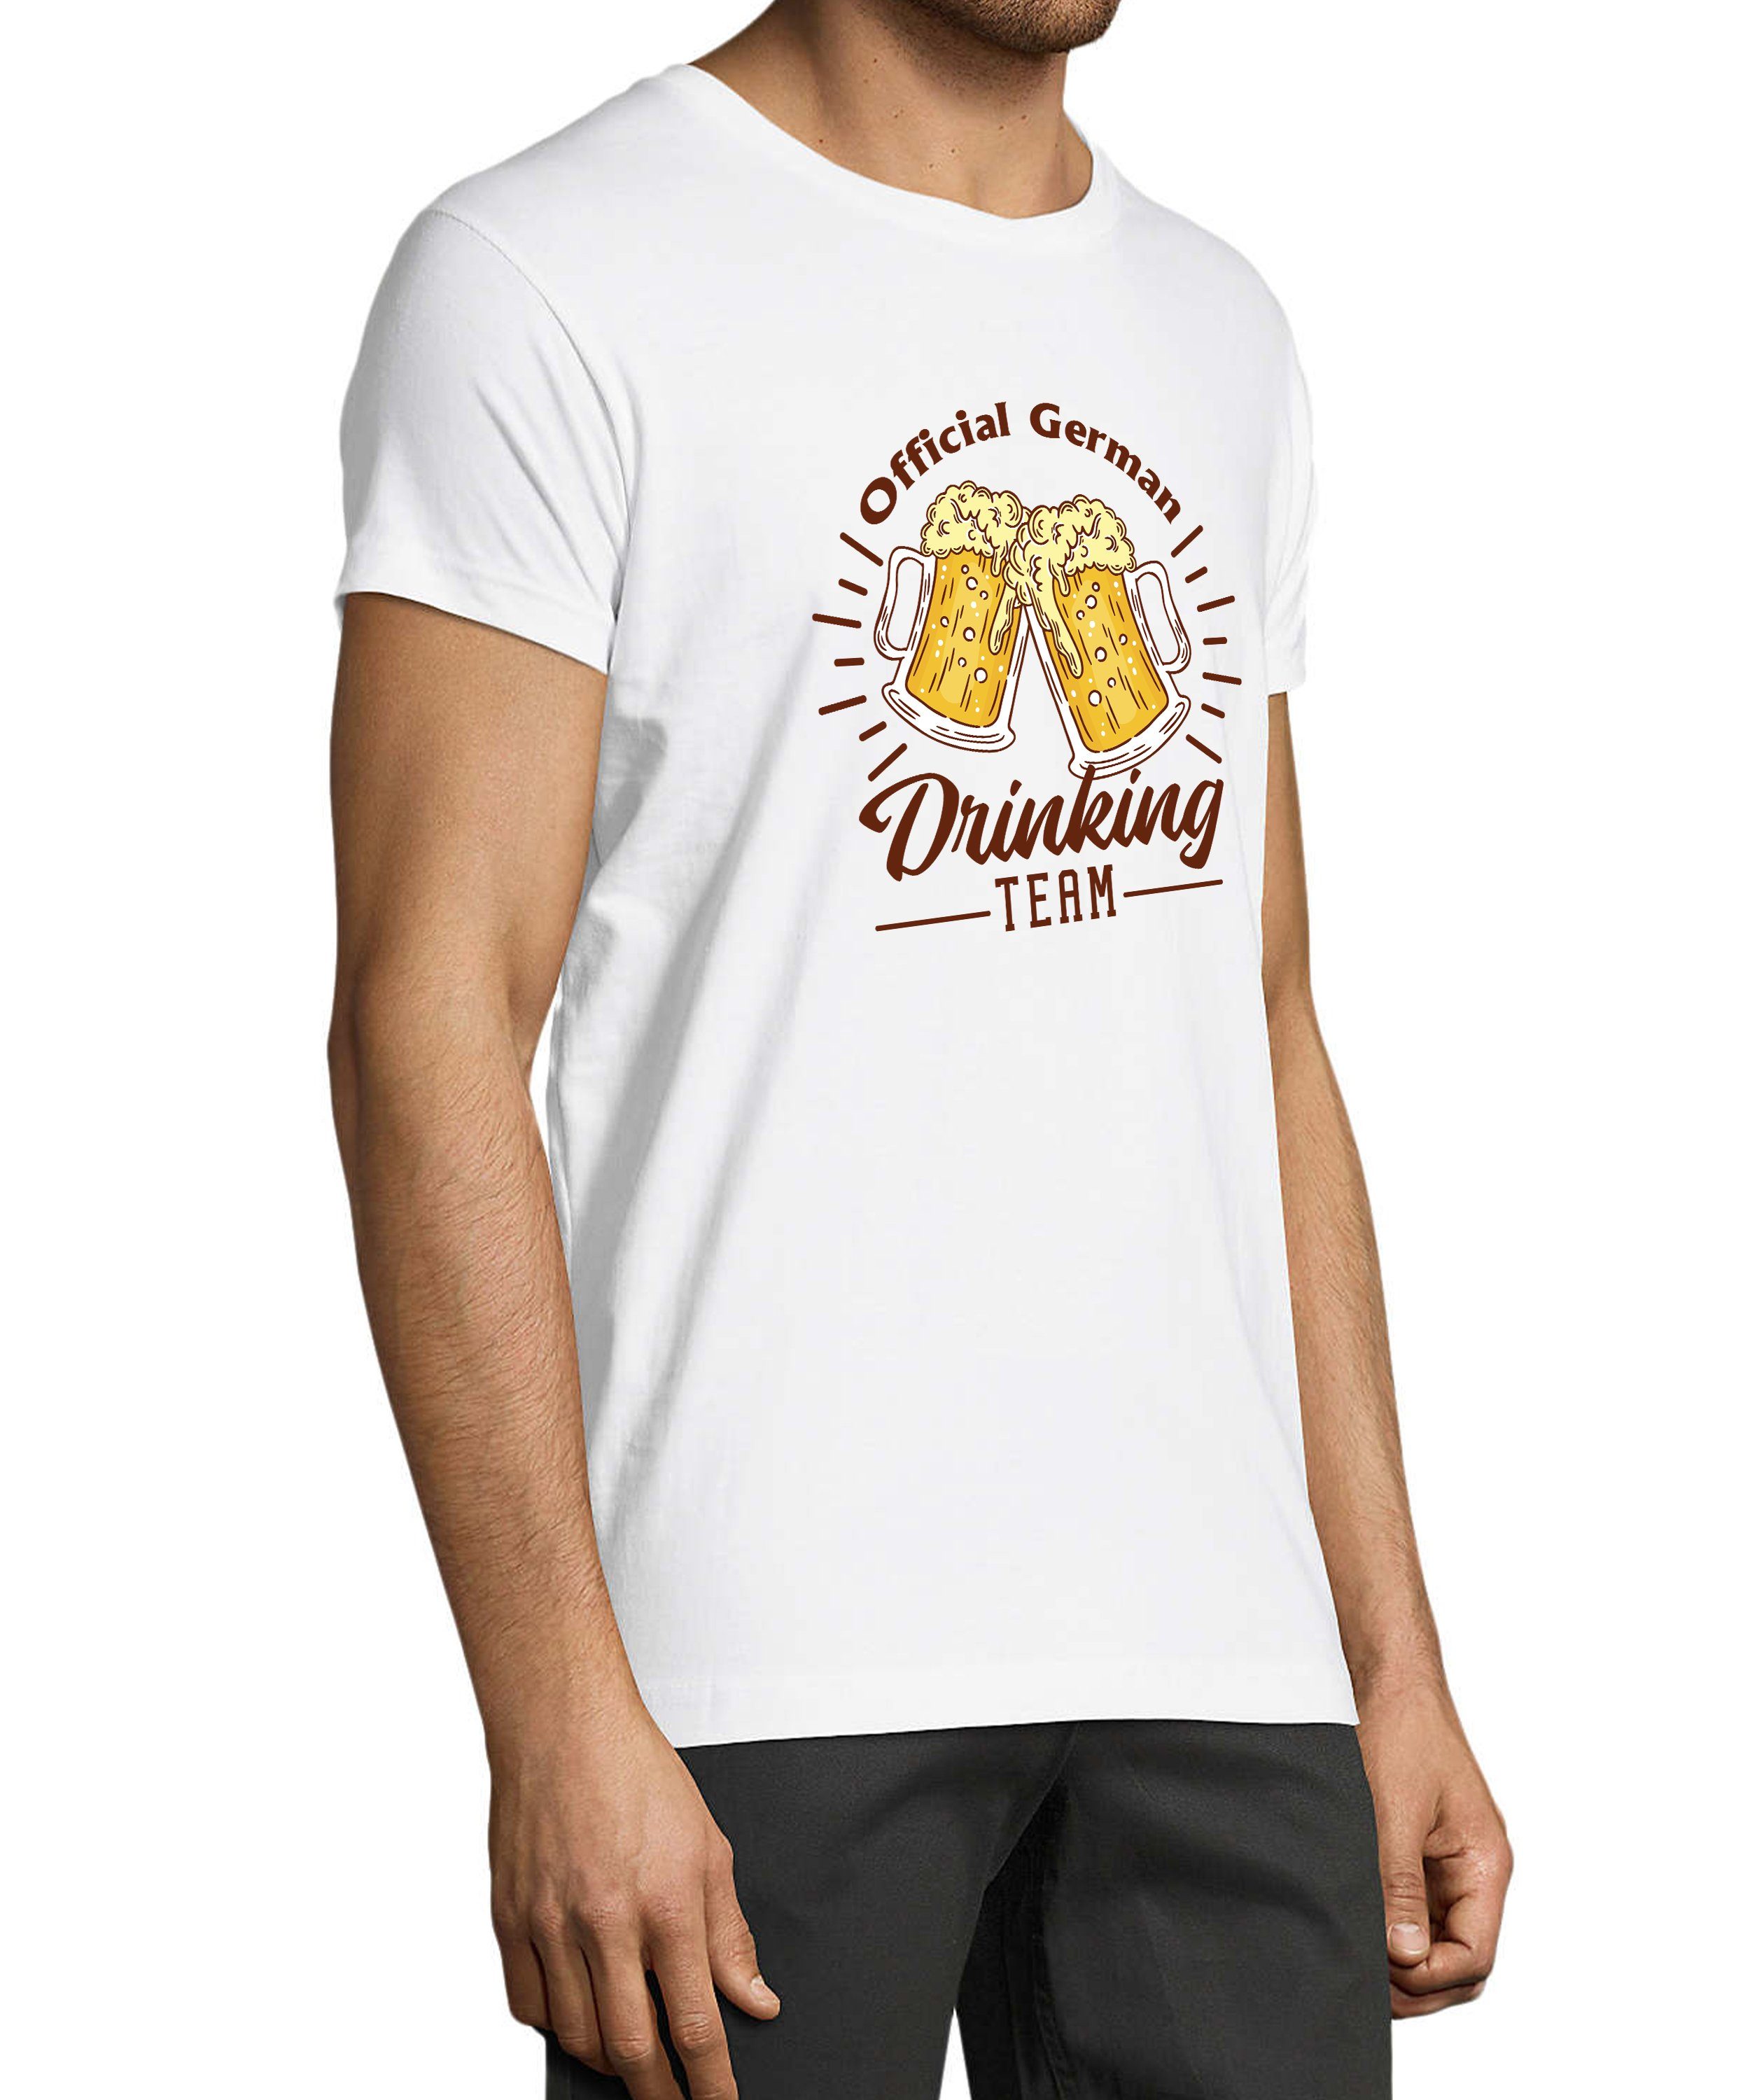 MyDesign24 T-Shirt Herren Fun Oktoberfest Baumwollshirt Regular i304 Print Shirt weiss Fit, official mit Team Aufdruck Drinking 